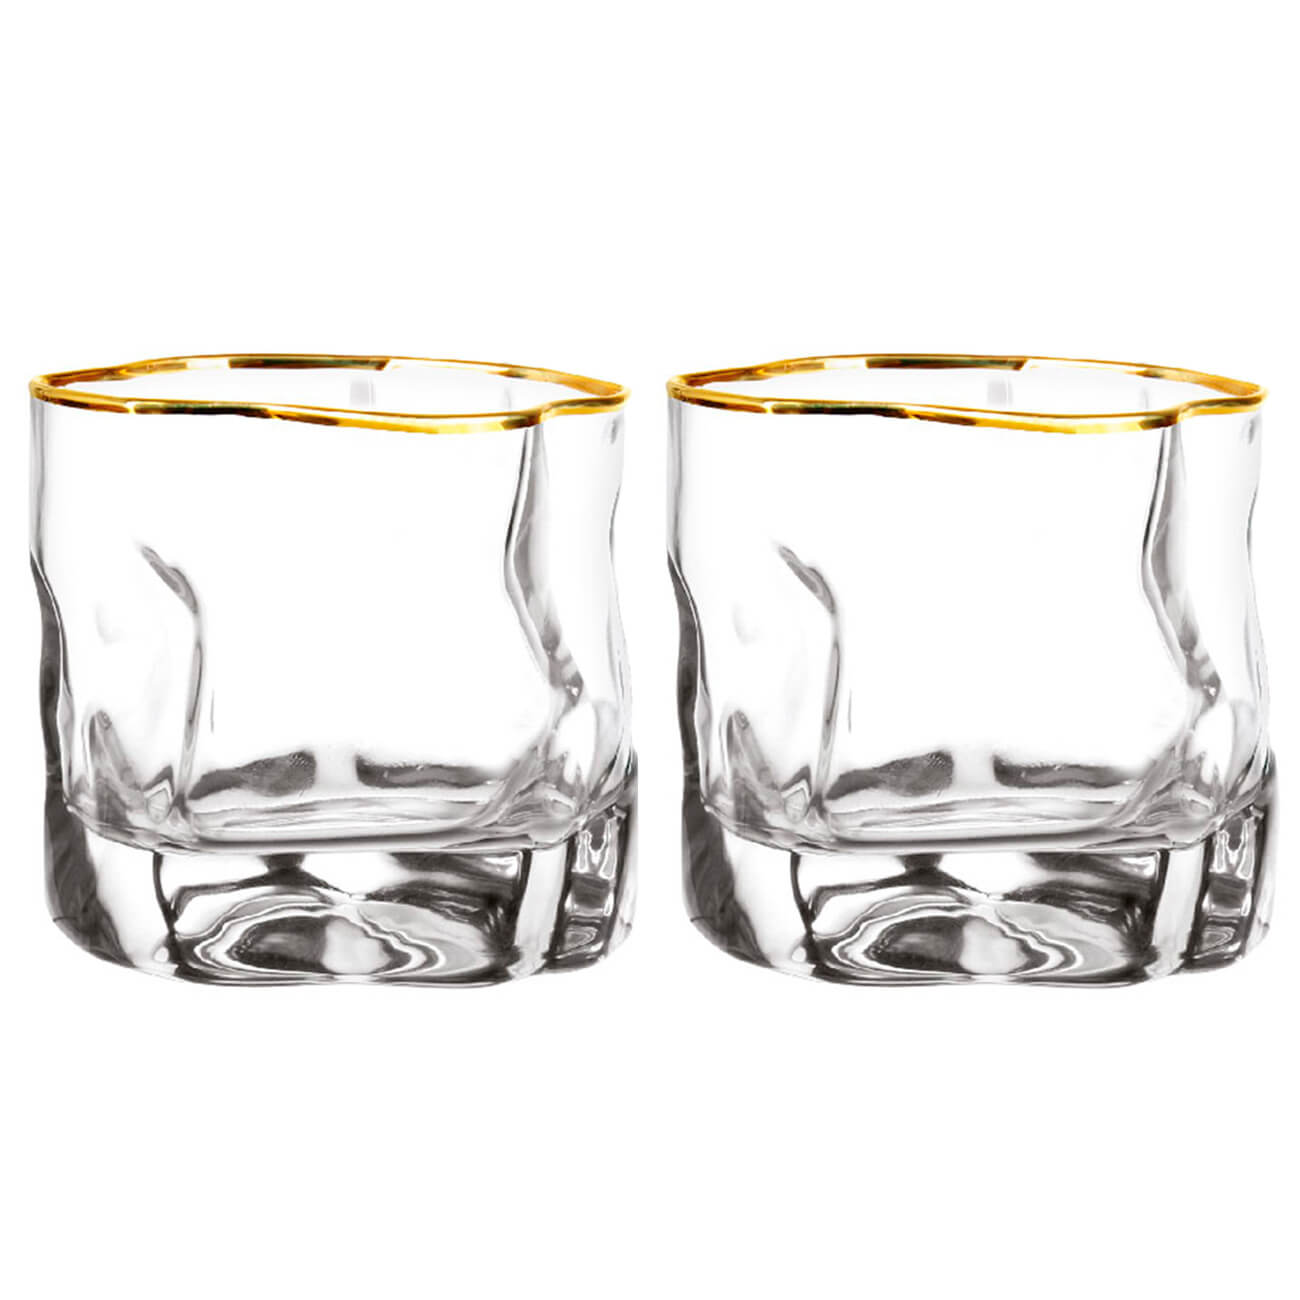 набор стаканов для виски le stelle opium хрустальное стекло 6шт 0 45л lr 013 Стакан для виски, 245 мл, 2 шт, стекло, с золотистым кантом, Slalom gold